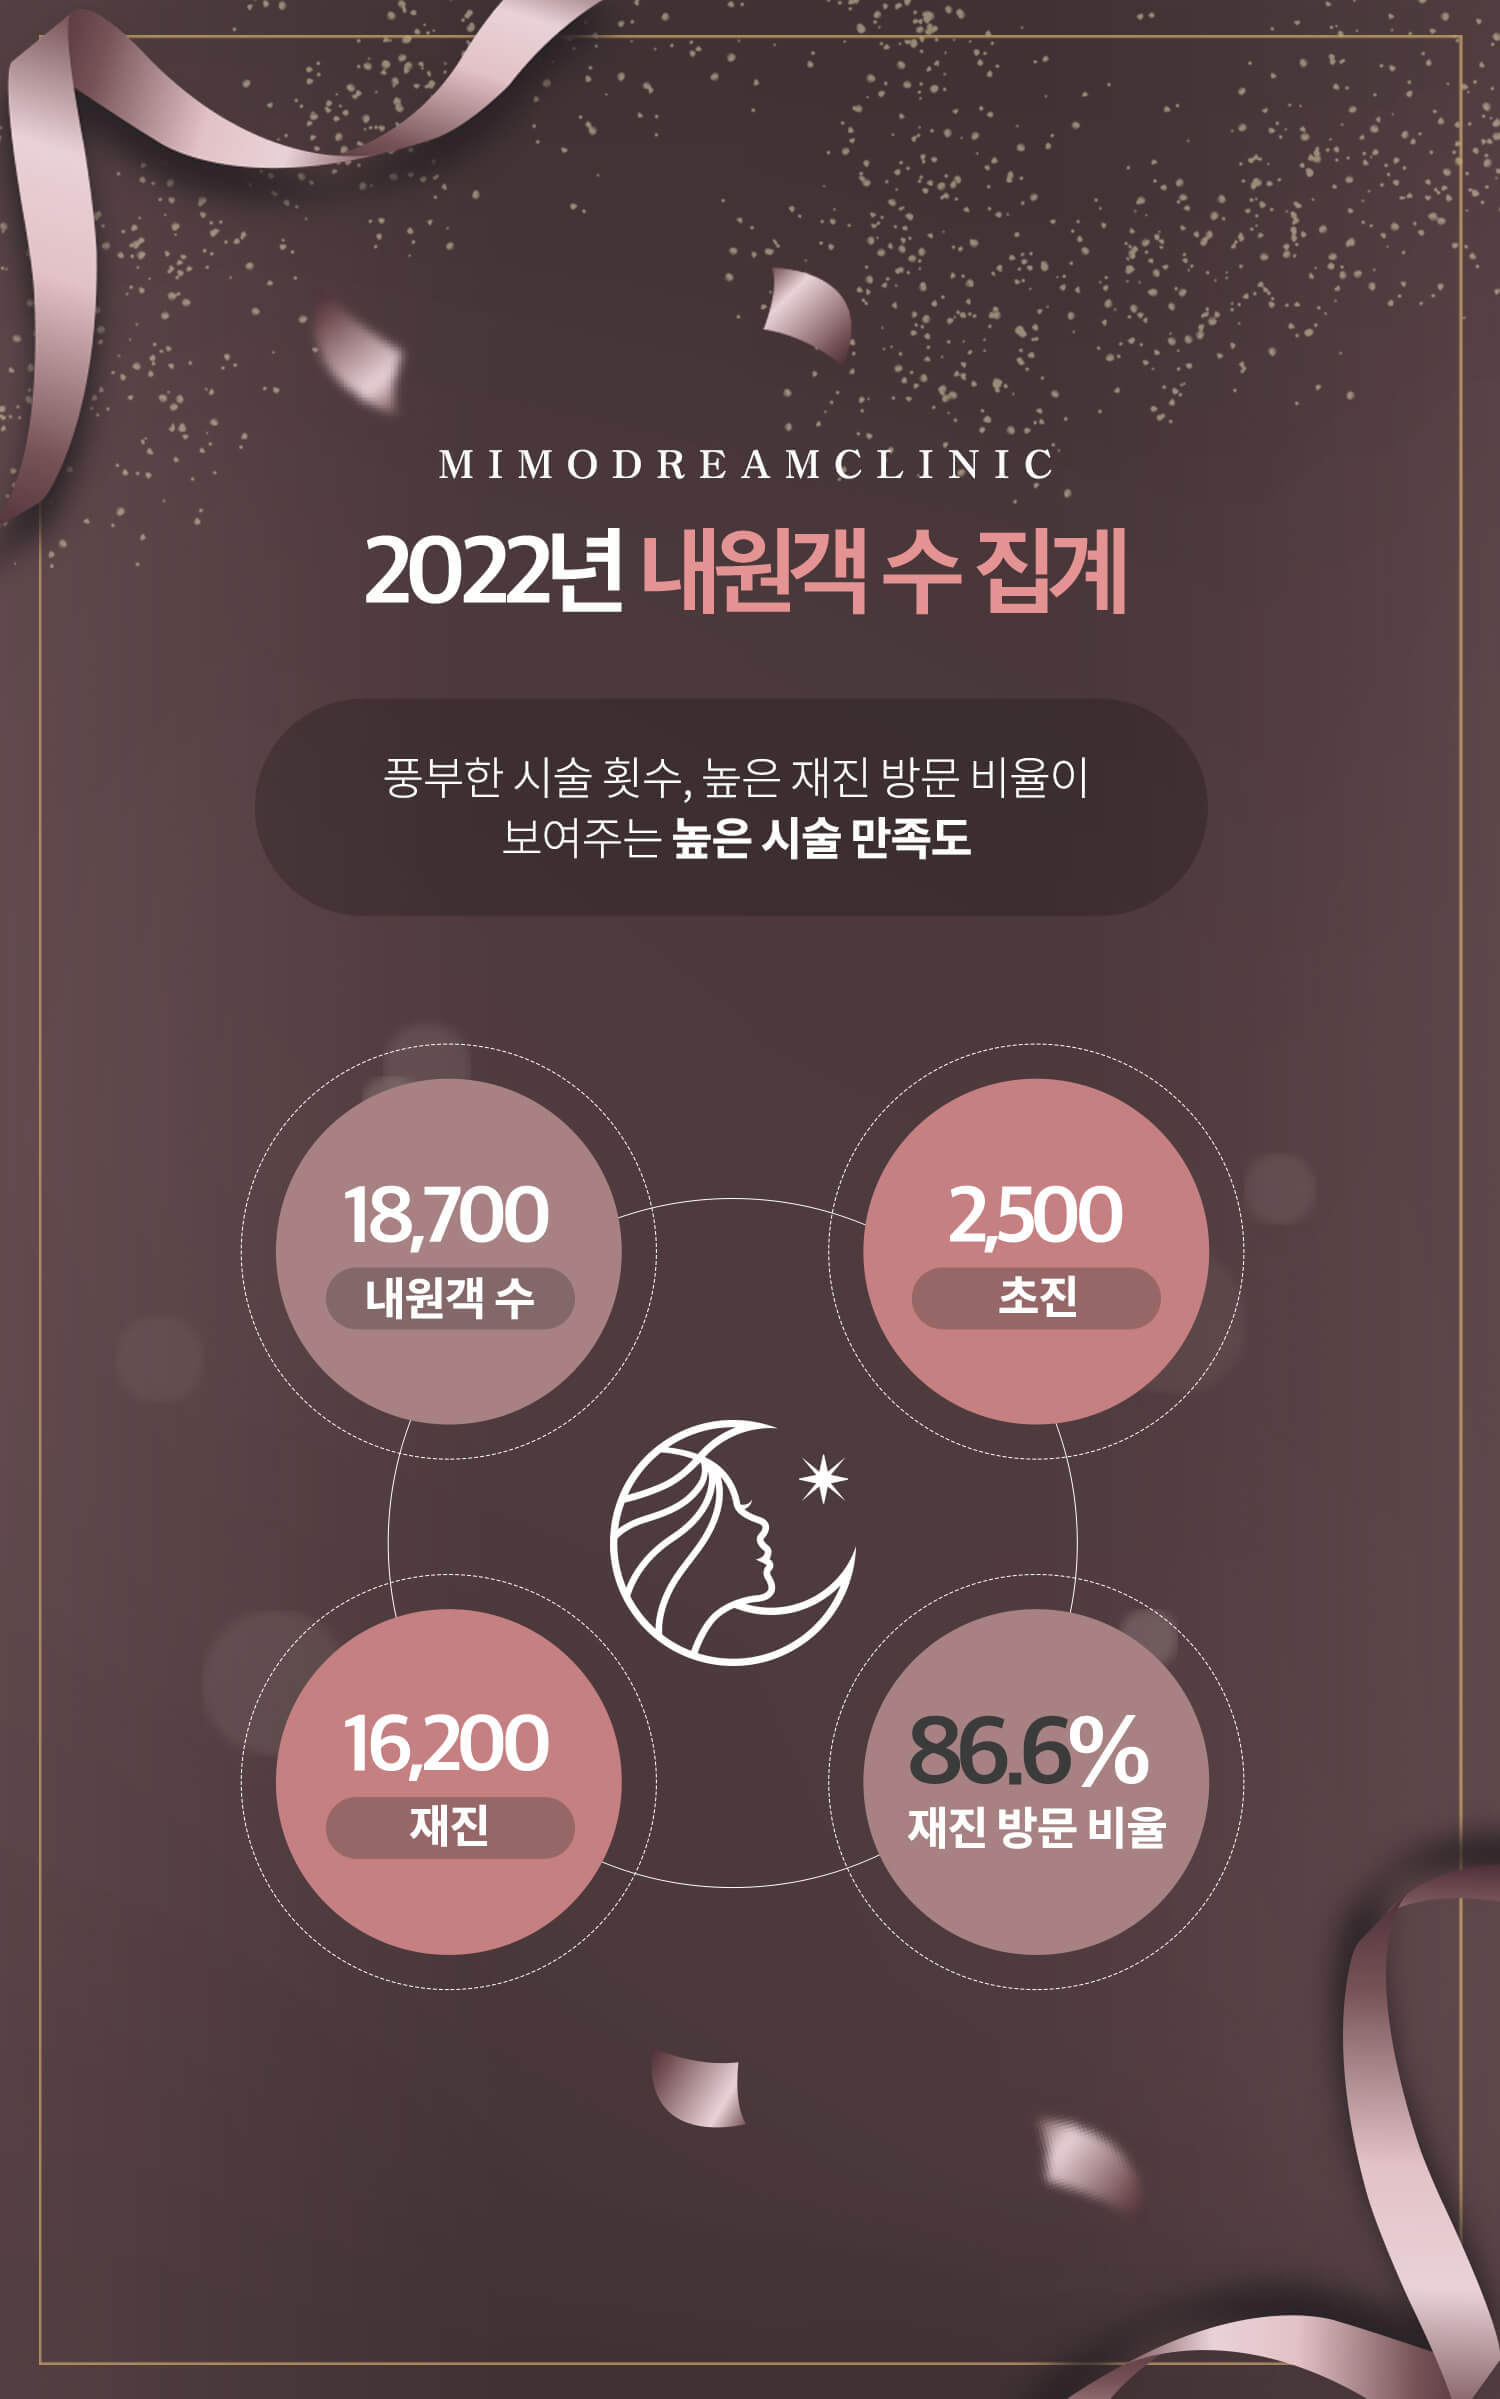 소개(2022년 재진비율)_용량다운